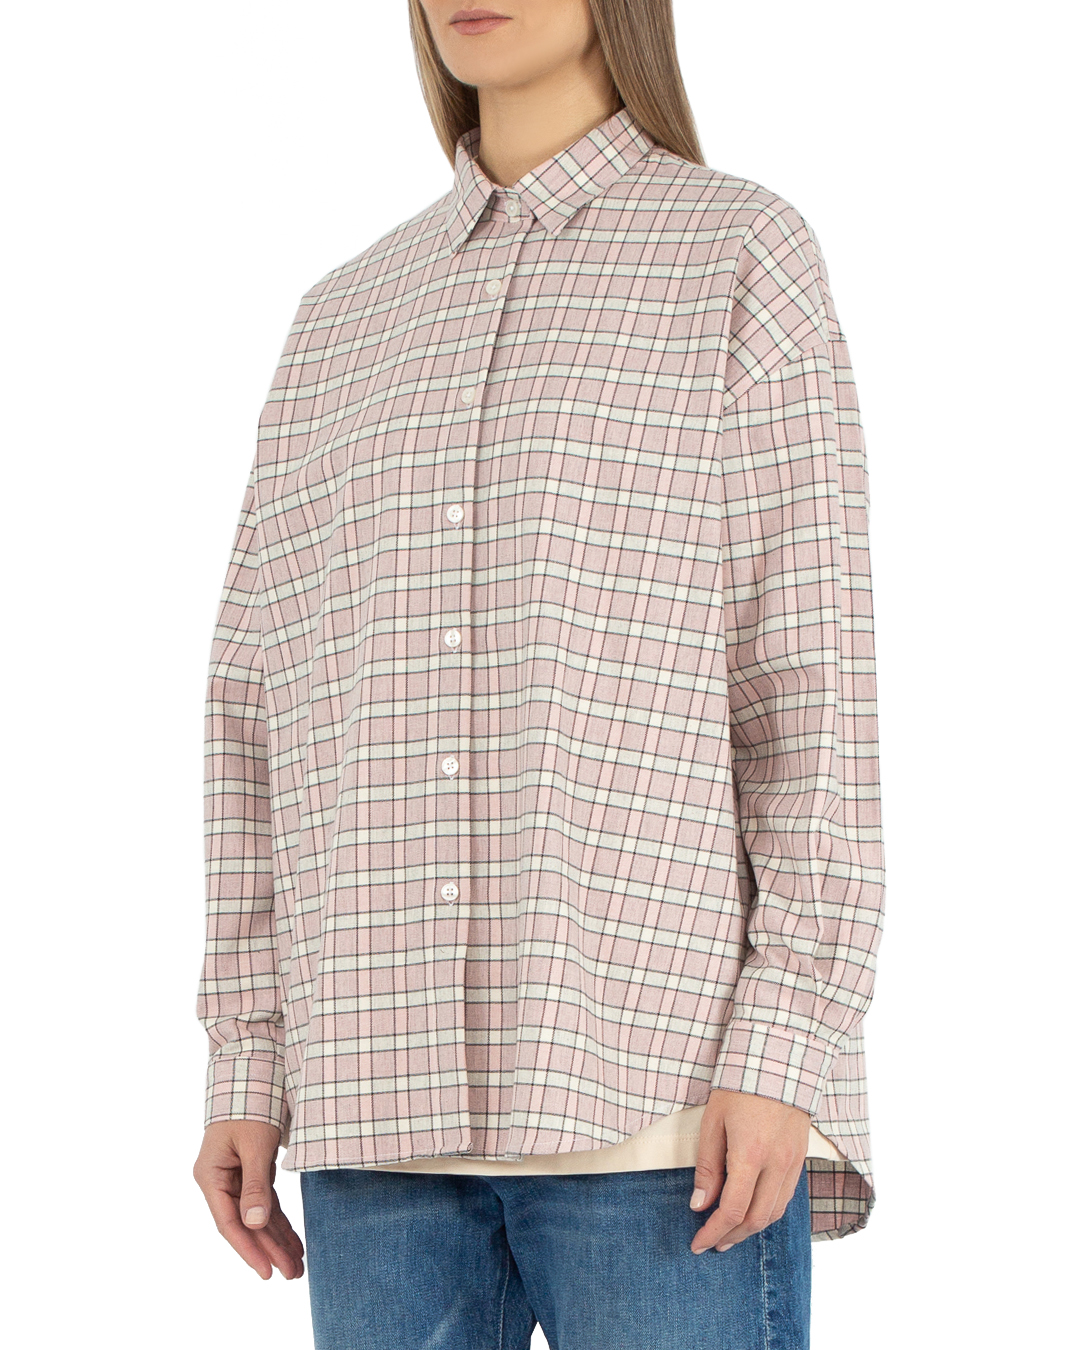 хлопковая рубашка ANTELOPE THE LABEL A2.512 св.розовый+принт l, размер l, цвет св.розовый+принт A2.512 св.розовый+принт l - фото 3